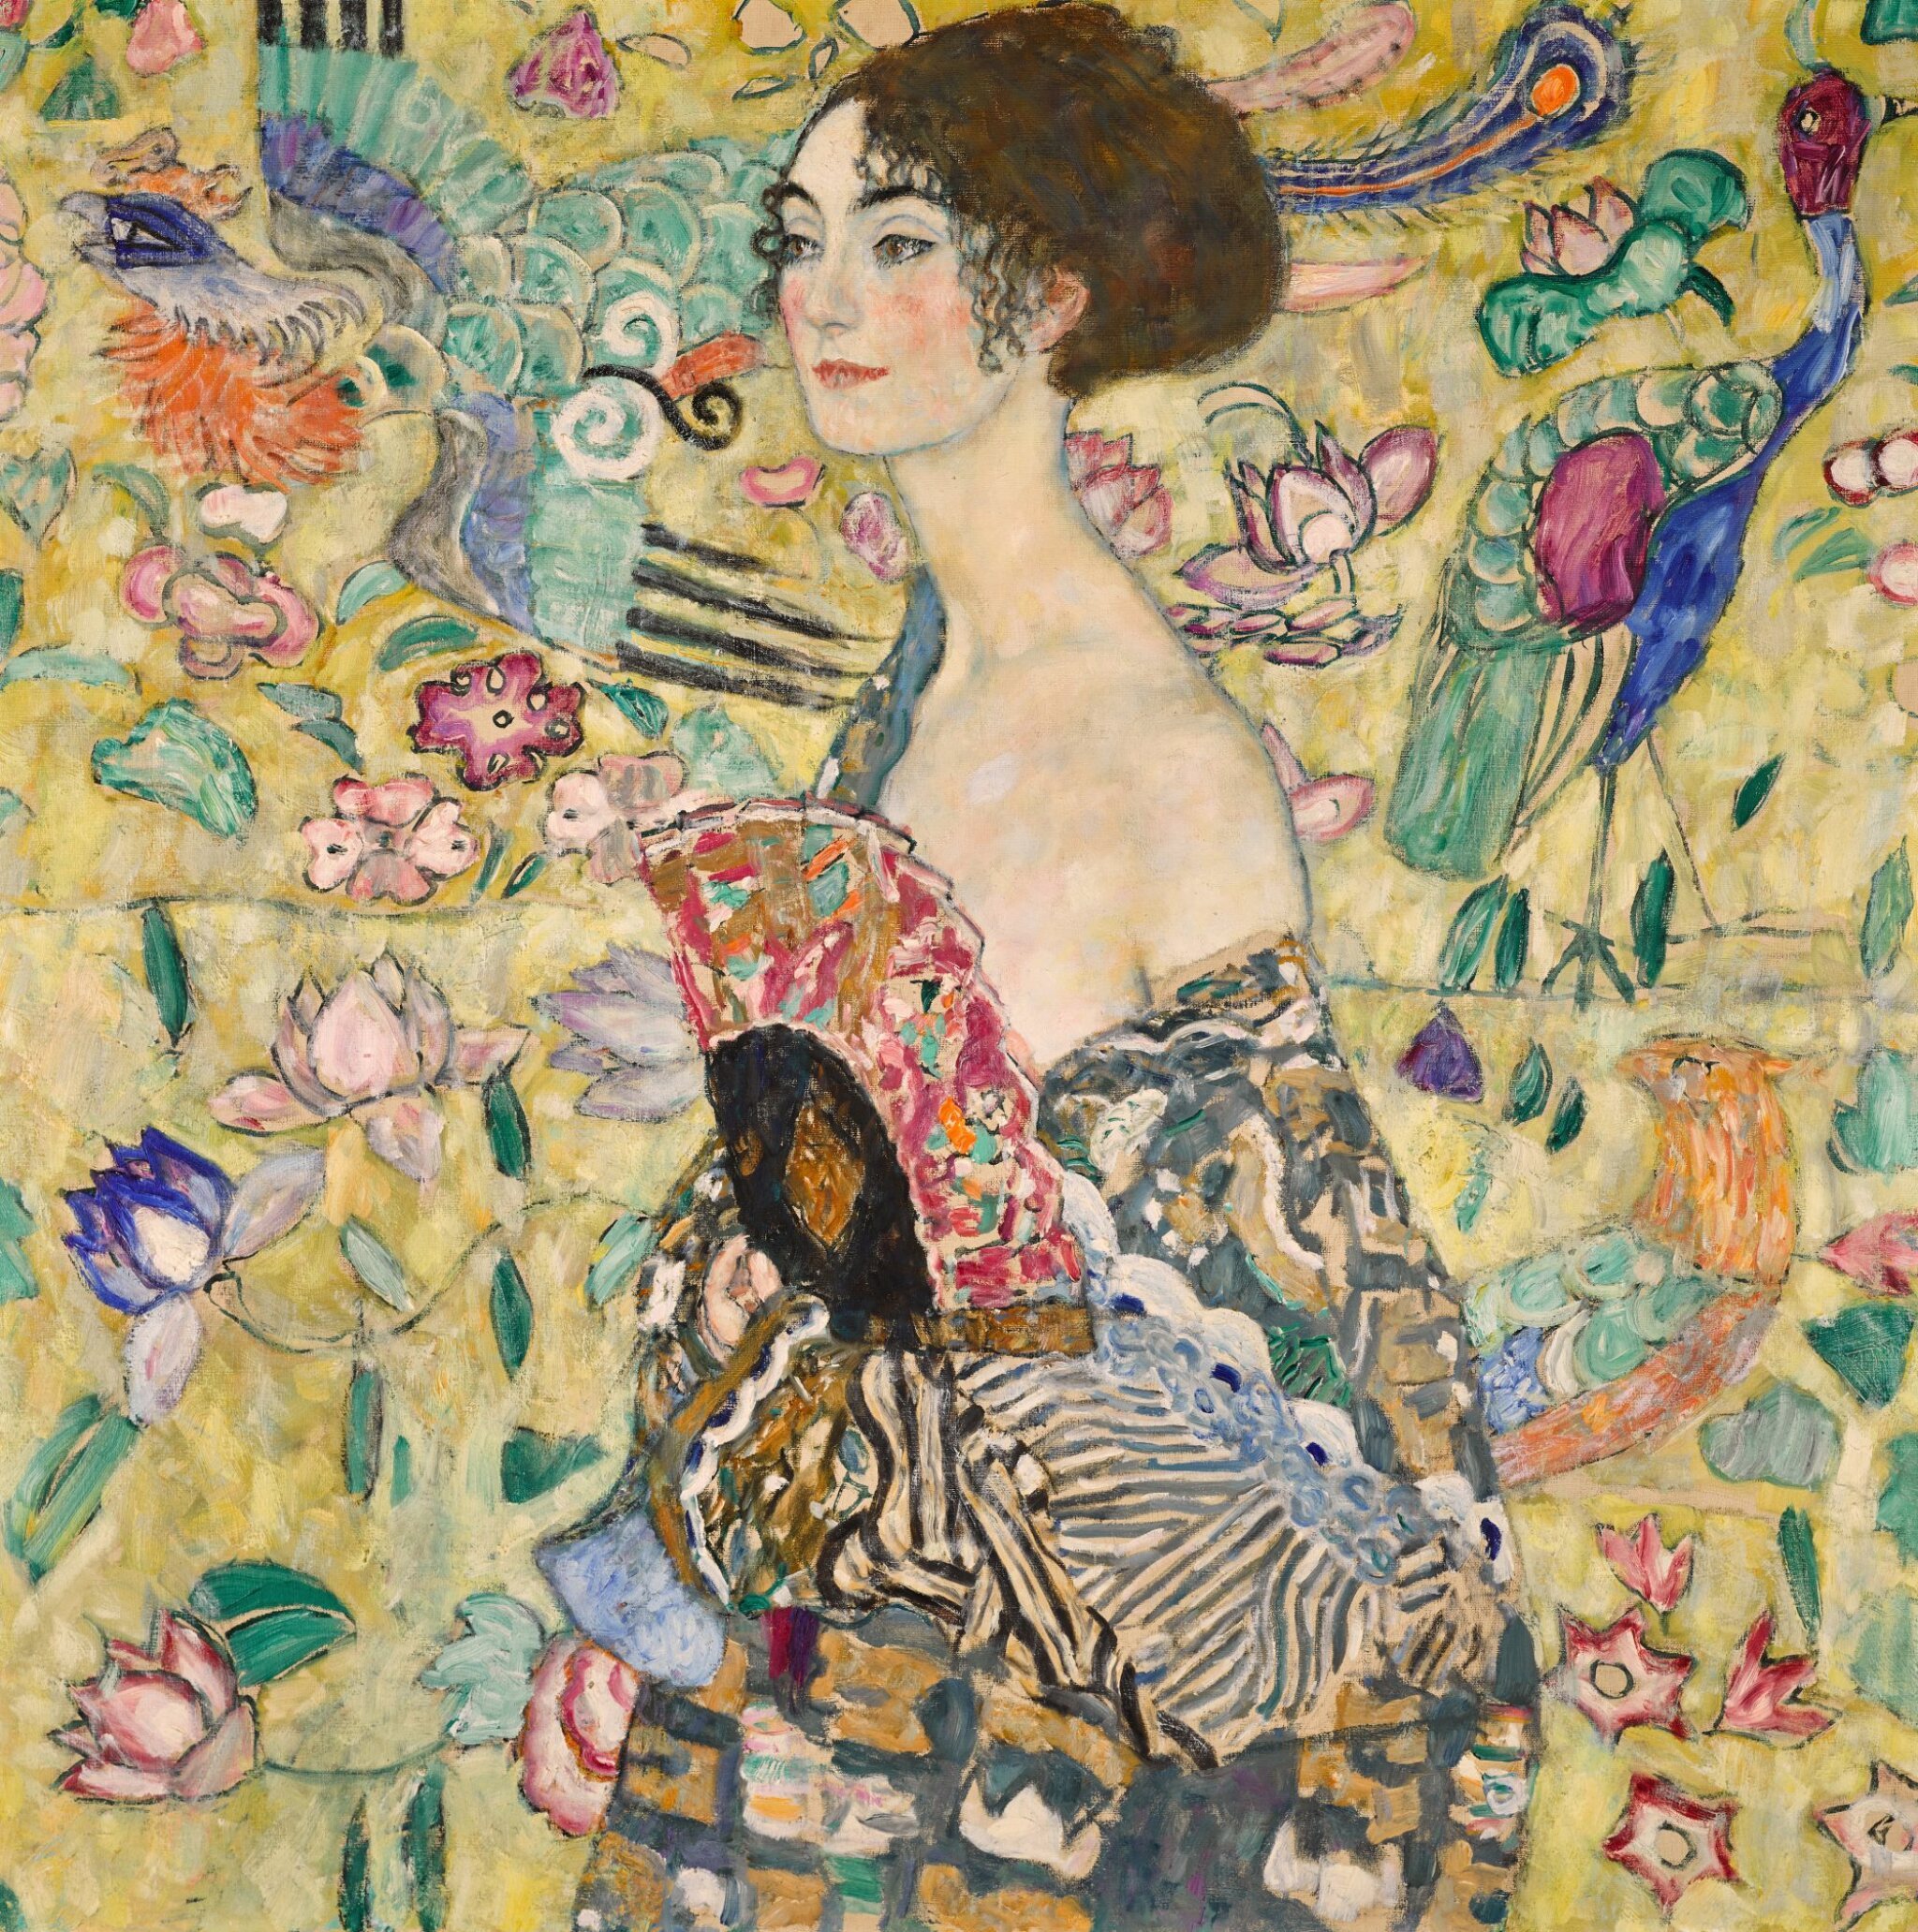 拿扇子的女人 by 古斯塔夫· 克林姆特画 - 1917-1918 - 100.2 x 100.2 cm 